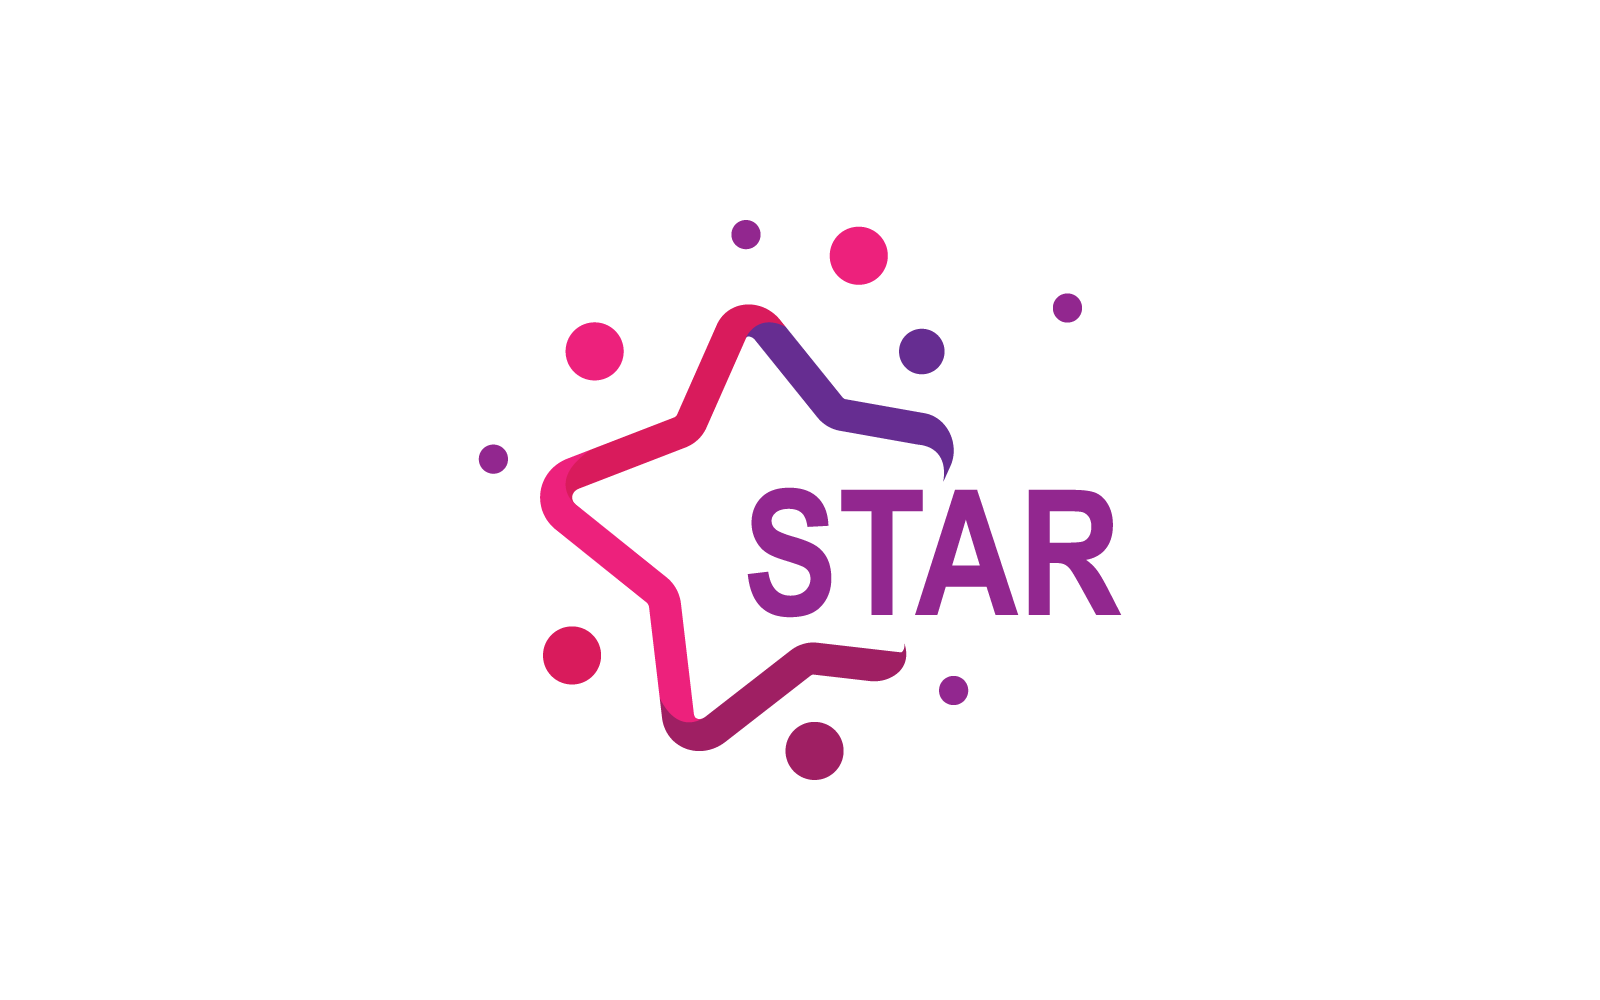 Dreams star logo vector illustration design